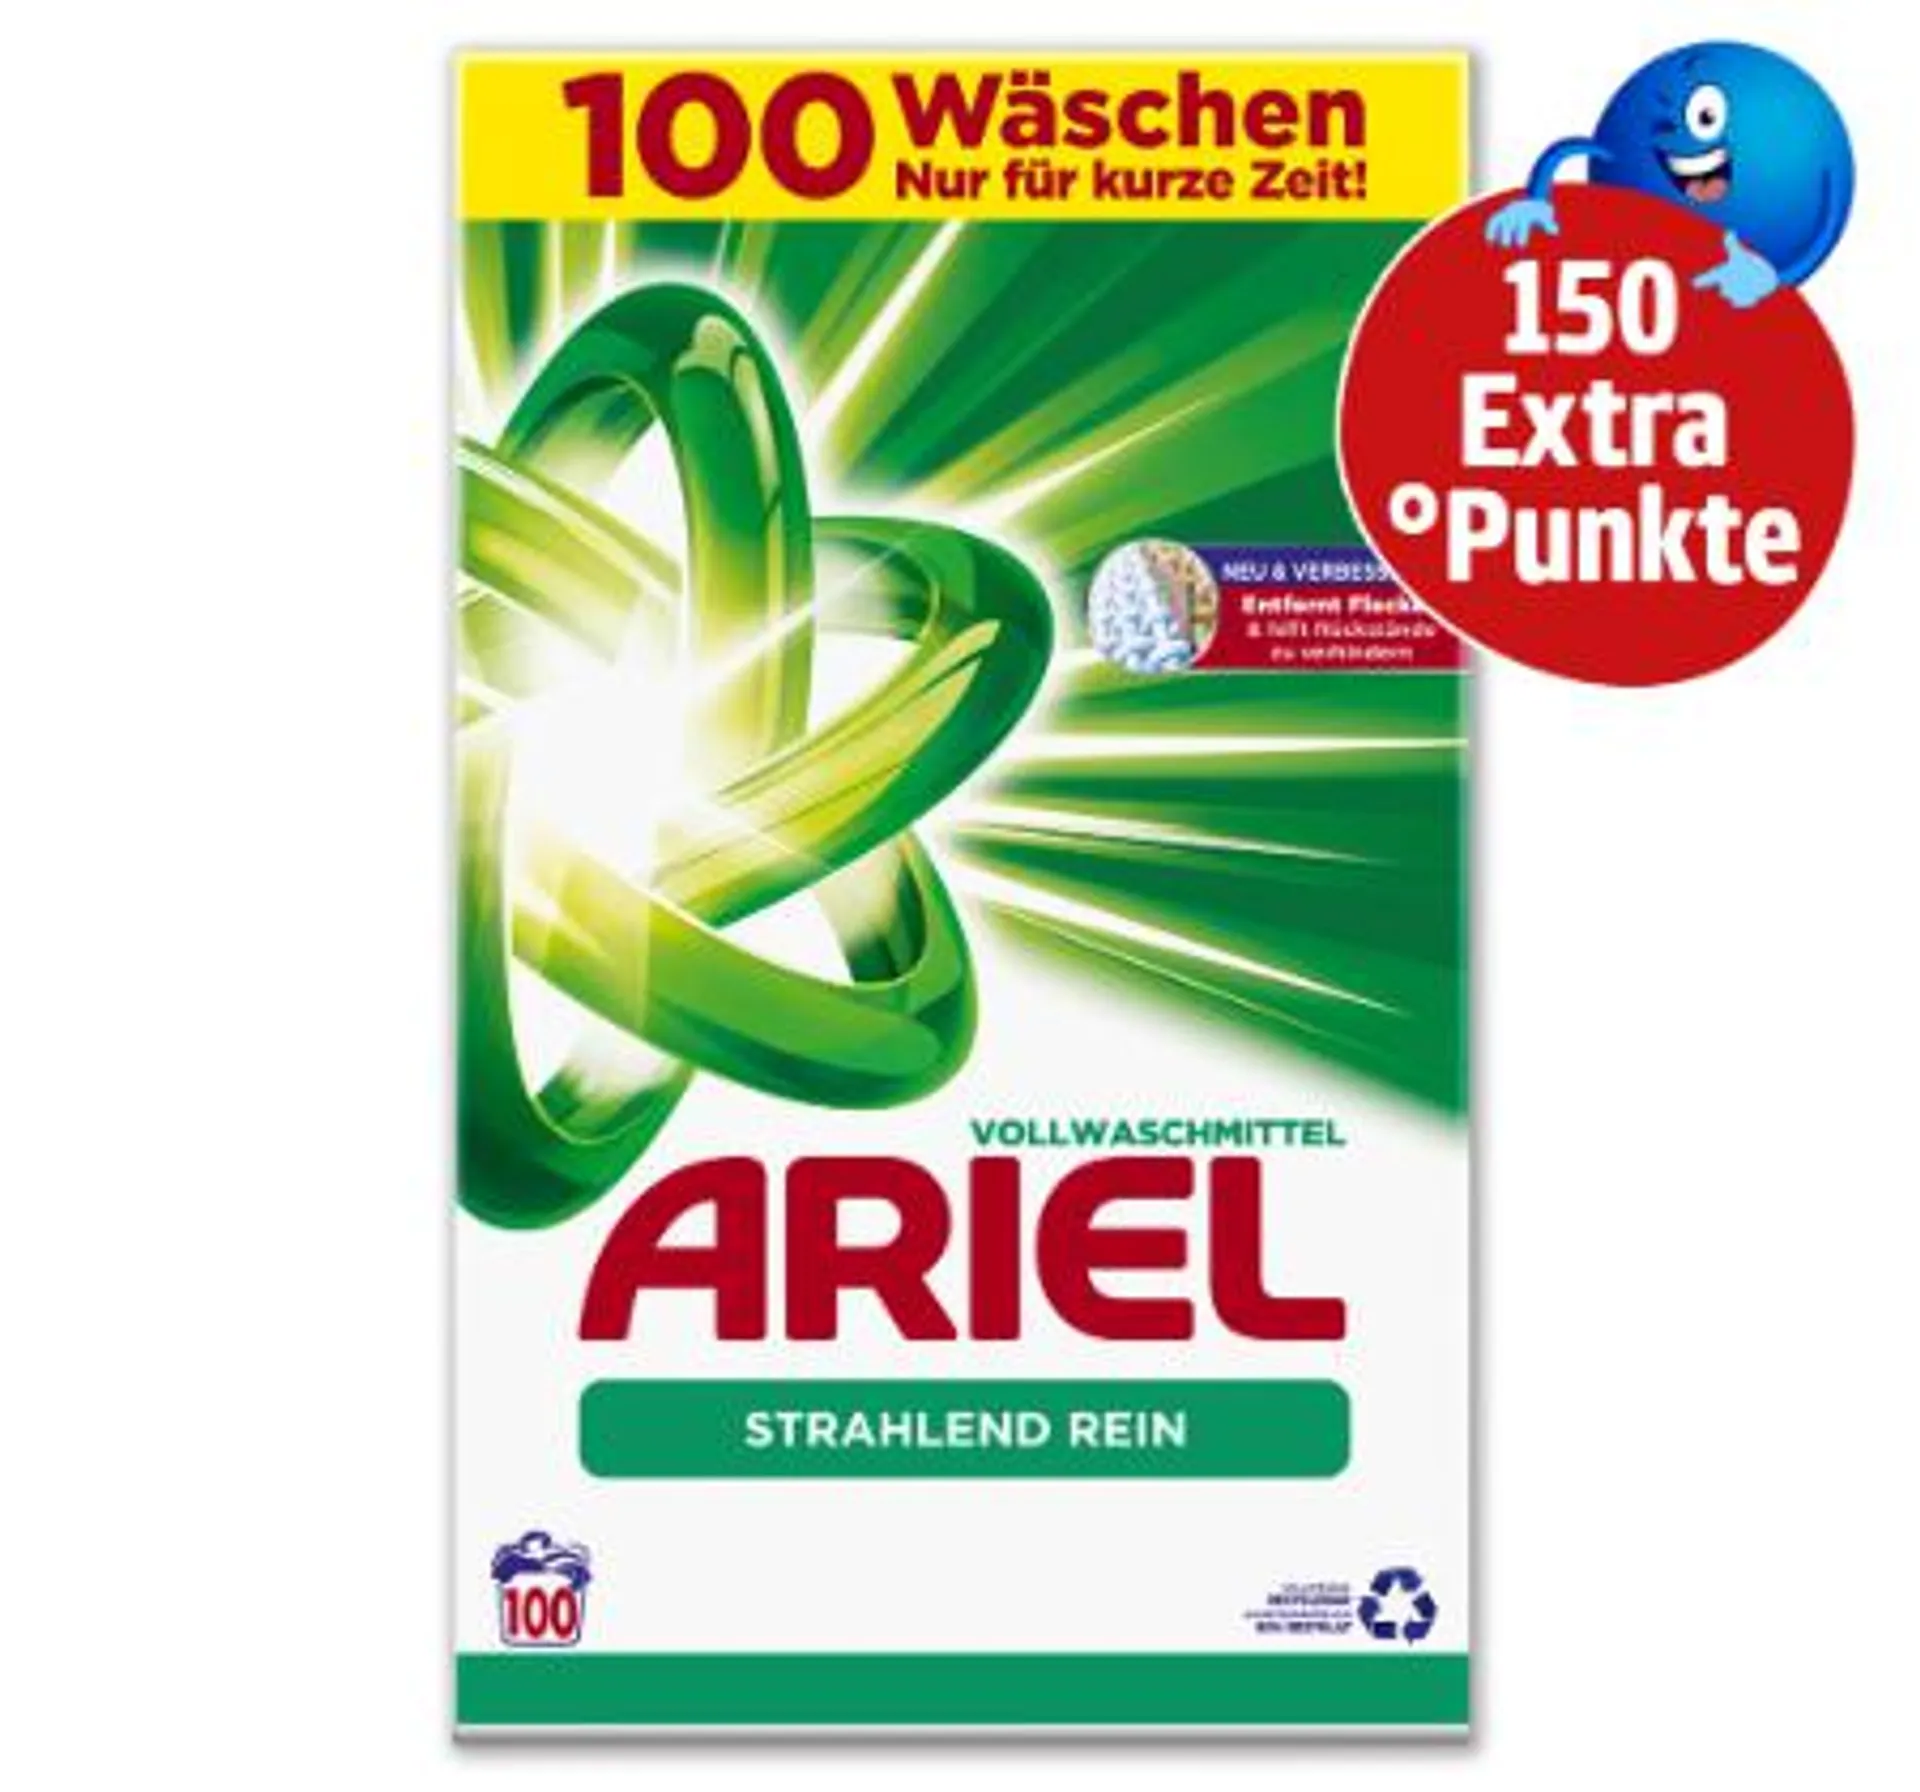 150 Extra°Punkte beim Kauf von Ariel Vollwaschmittel*